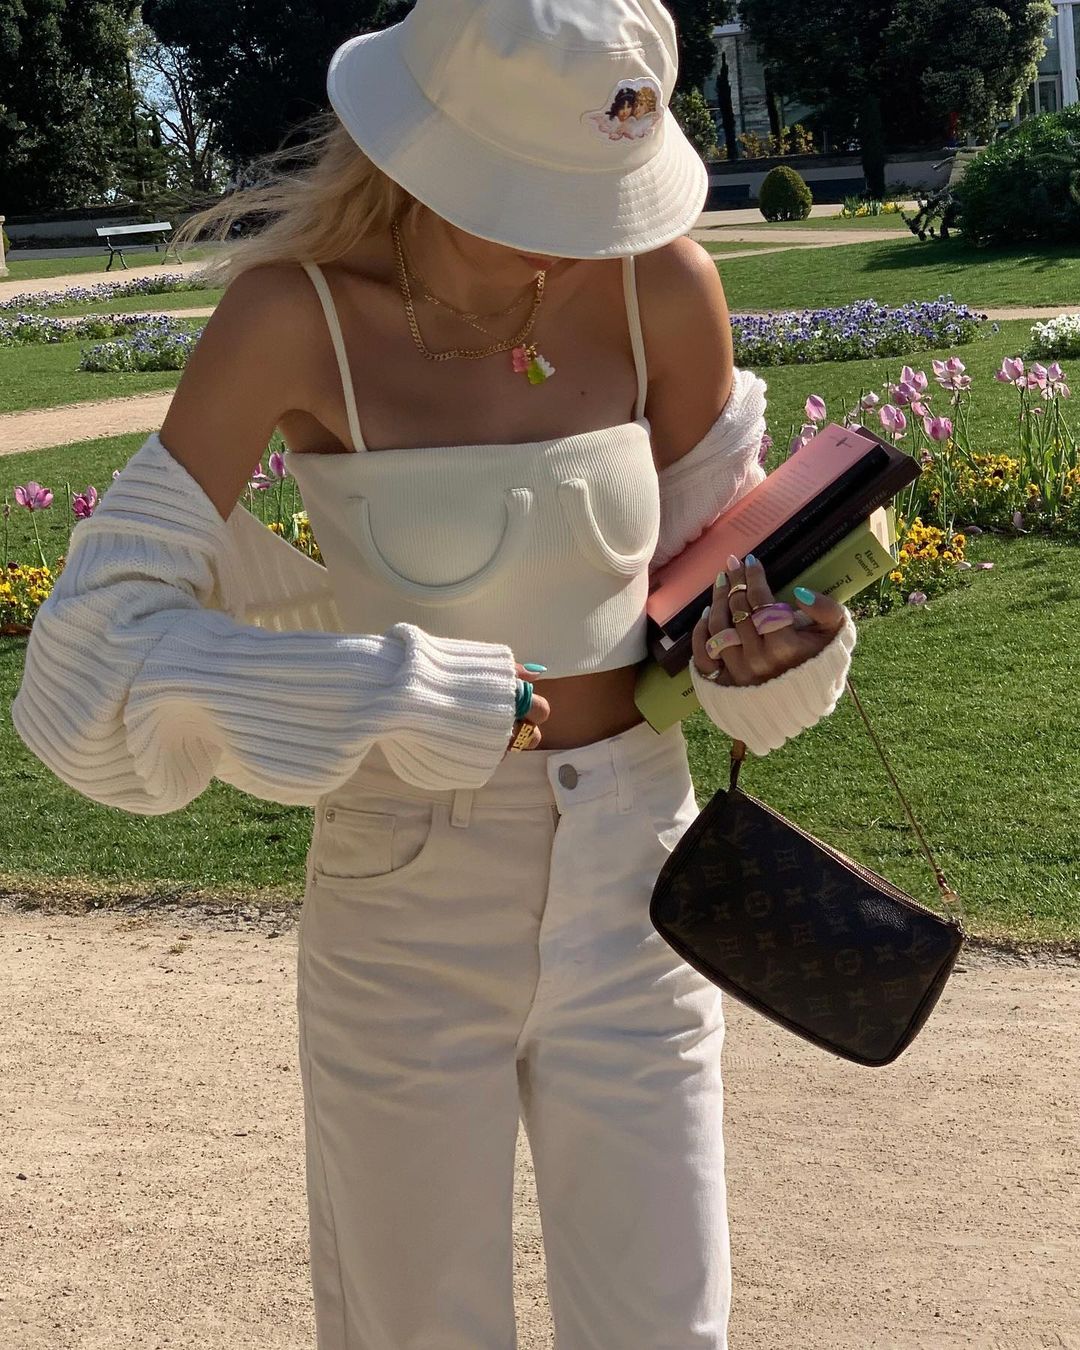 Garota usando top cropped off white com calça, cardigan e chapéu da mesma cor. O chapéu cobre seu rosto enquanto ela olha para baixo. Uma das mãos está segurando livros e uma bolsa preta.